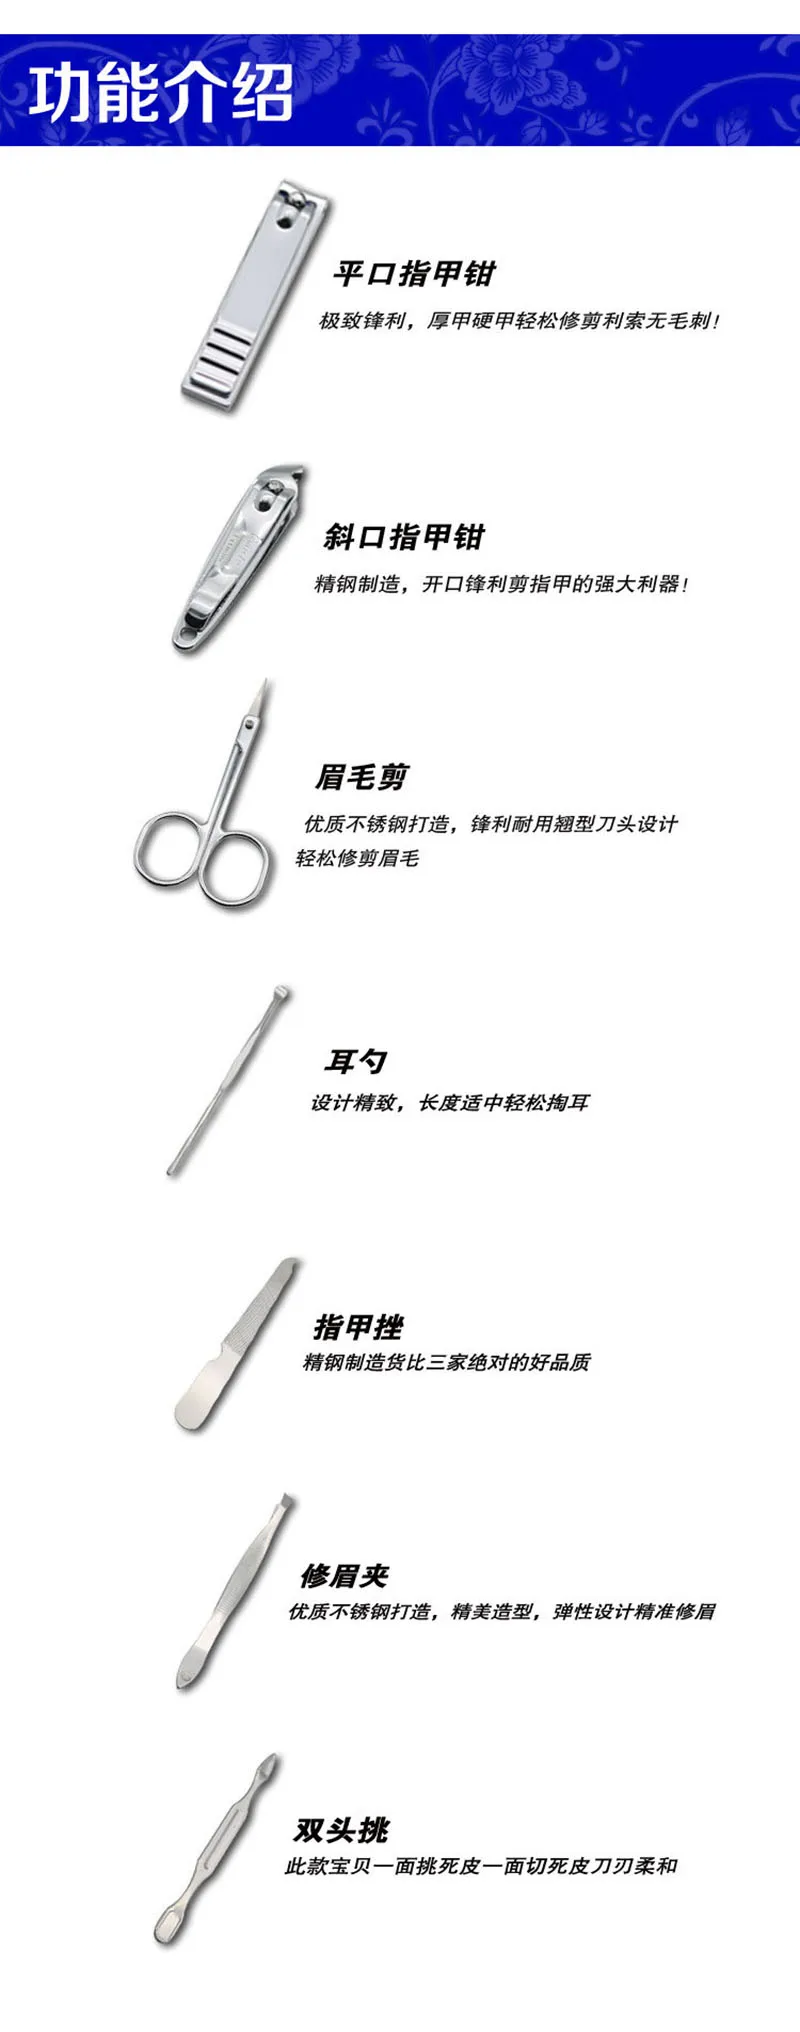 7 шт. в китайском стиле маникюрные машинки для ногтей педикюрный набор для ногтей портативный набор для гигиены путешествий набор из нержавеющей стали набор режущих инструментов для ногтей